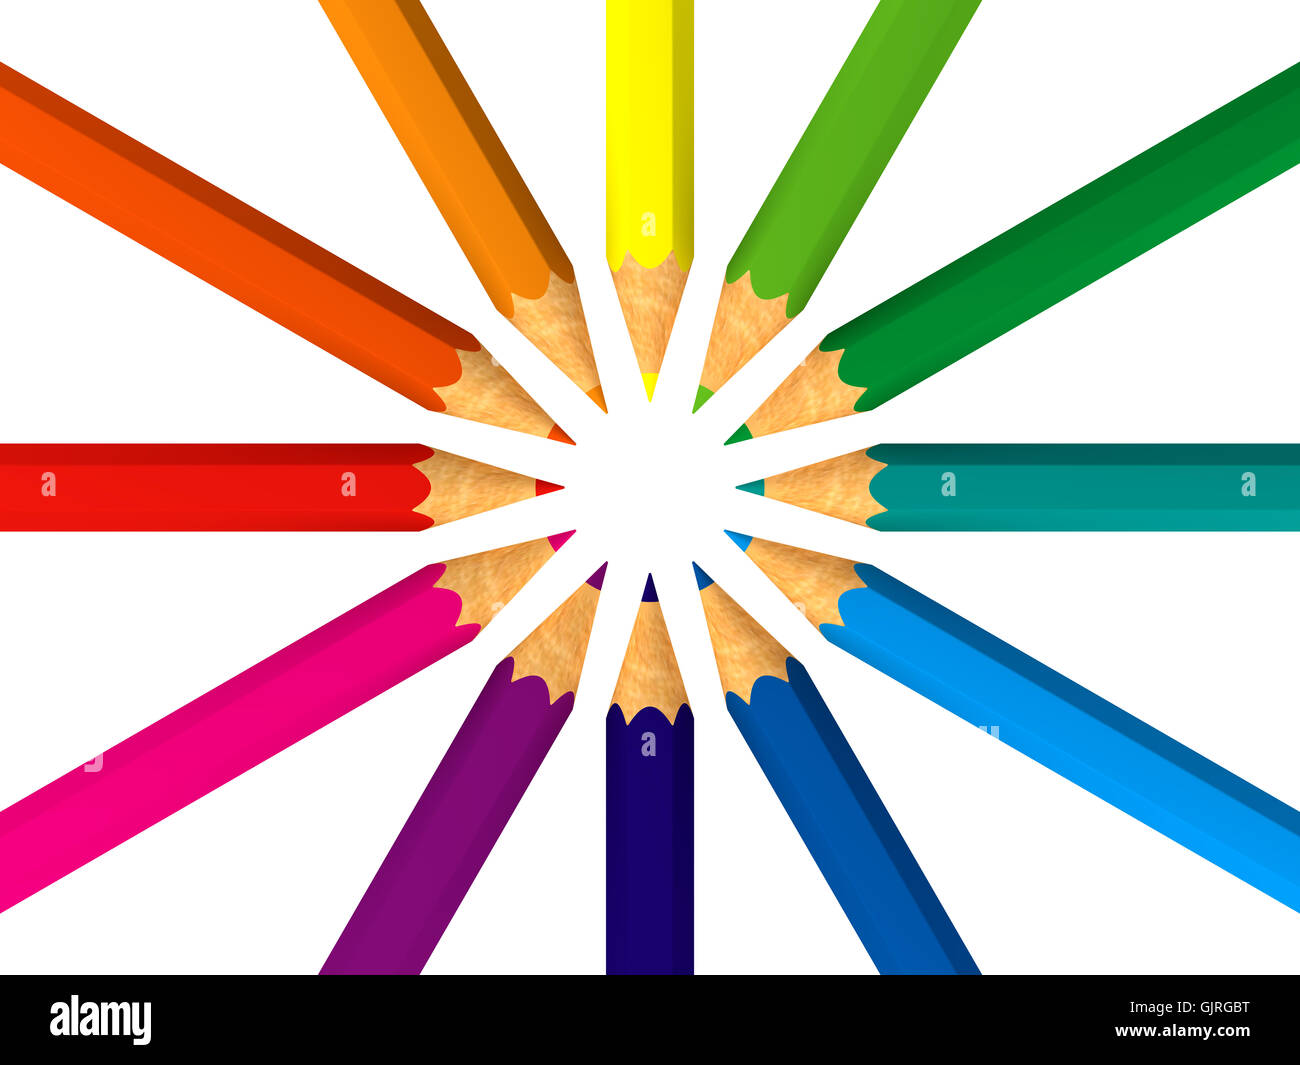 color range Stock Photo - Alamy